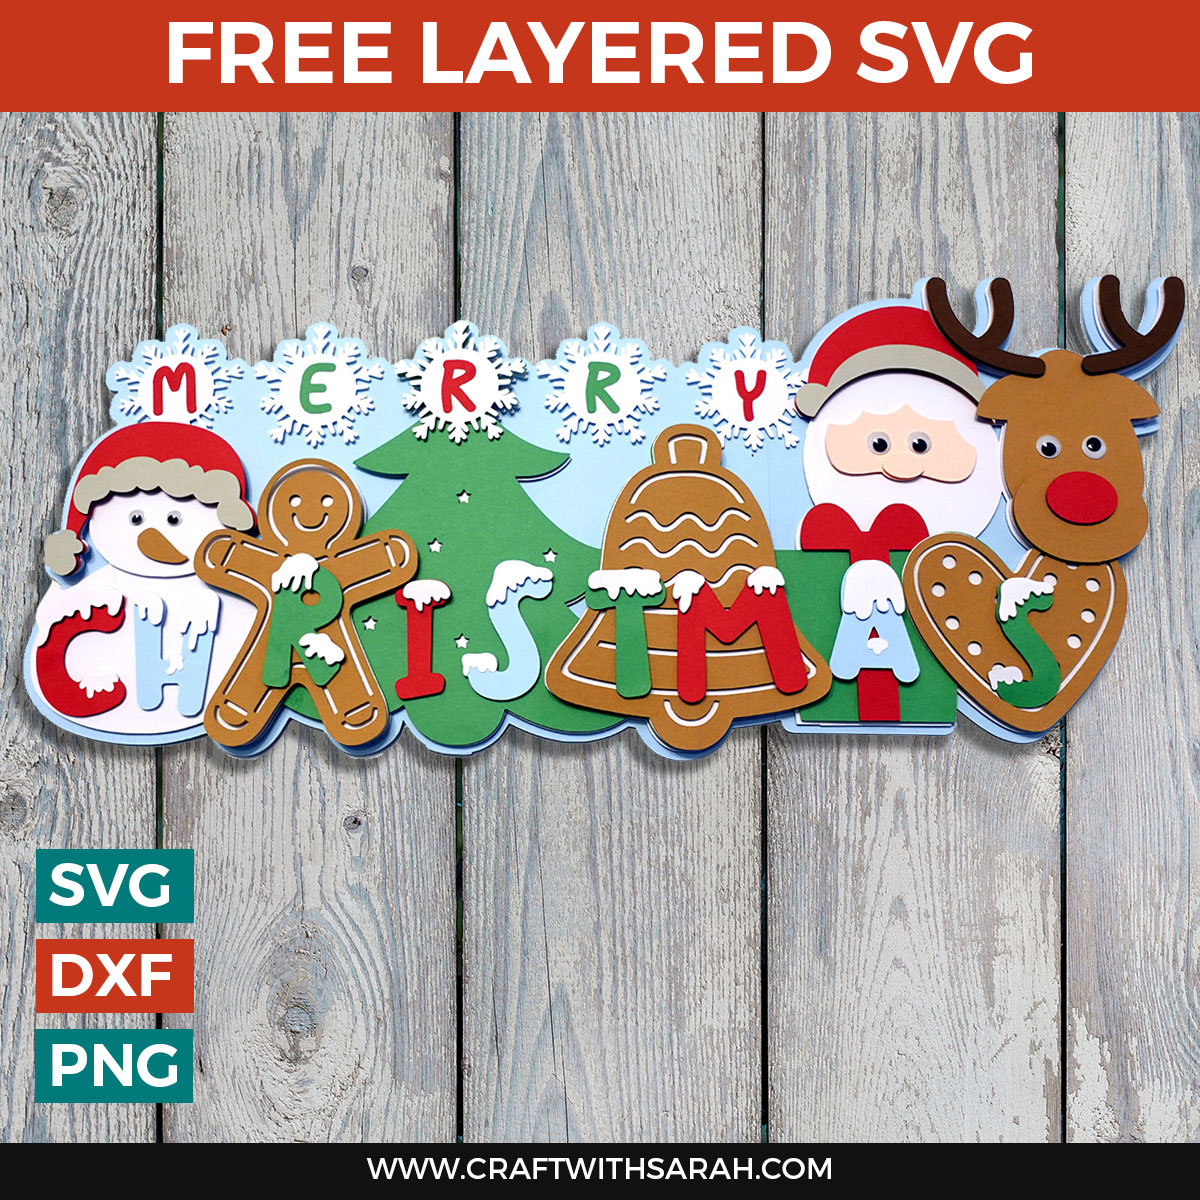 HUGE Merry Christmas Layered SVG Wall Art